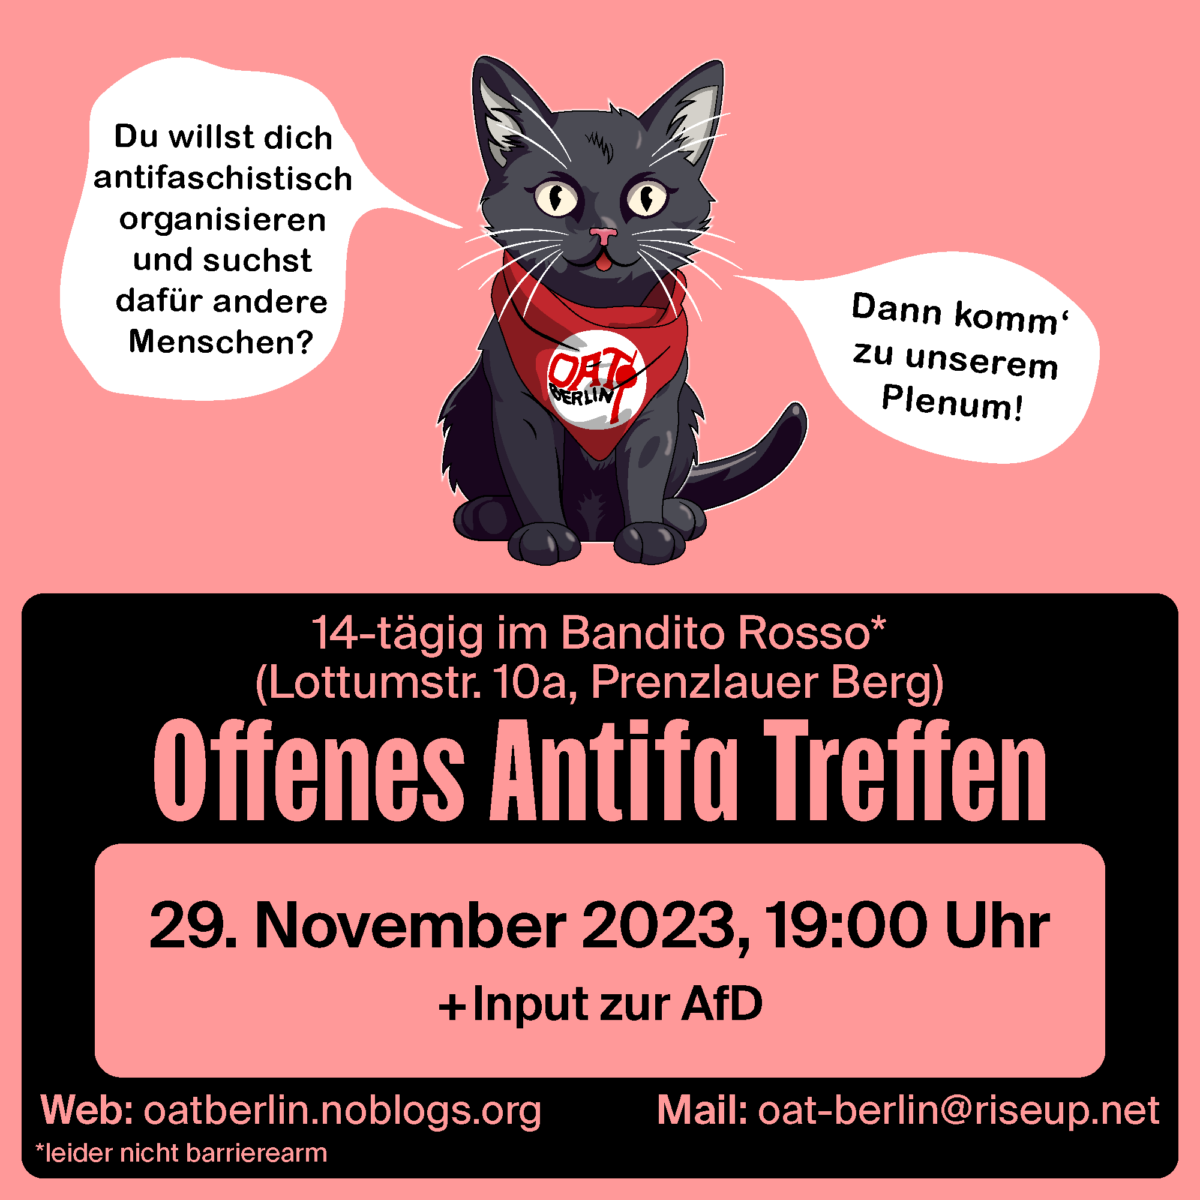 Offenes Antifa Treffen Berlin. 29. November 2023, 19:00 Uhr mit Input zur AfD